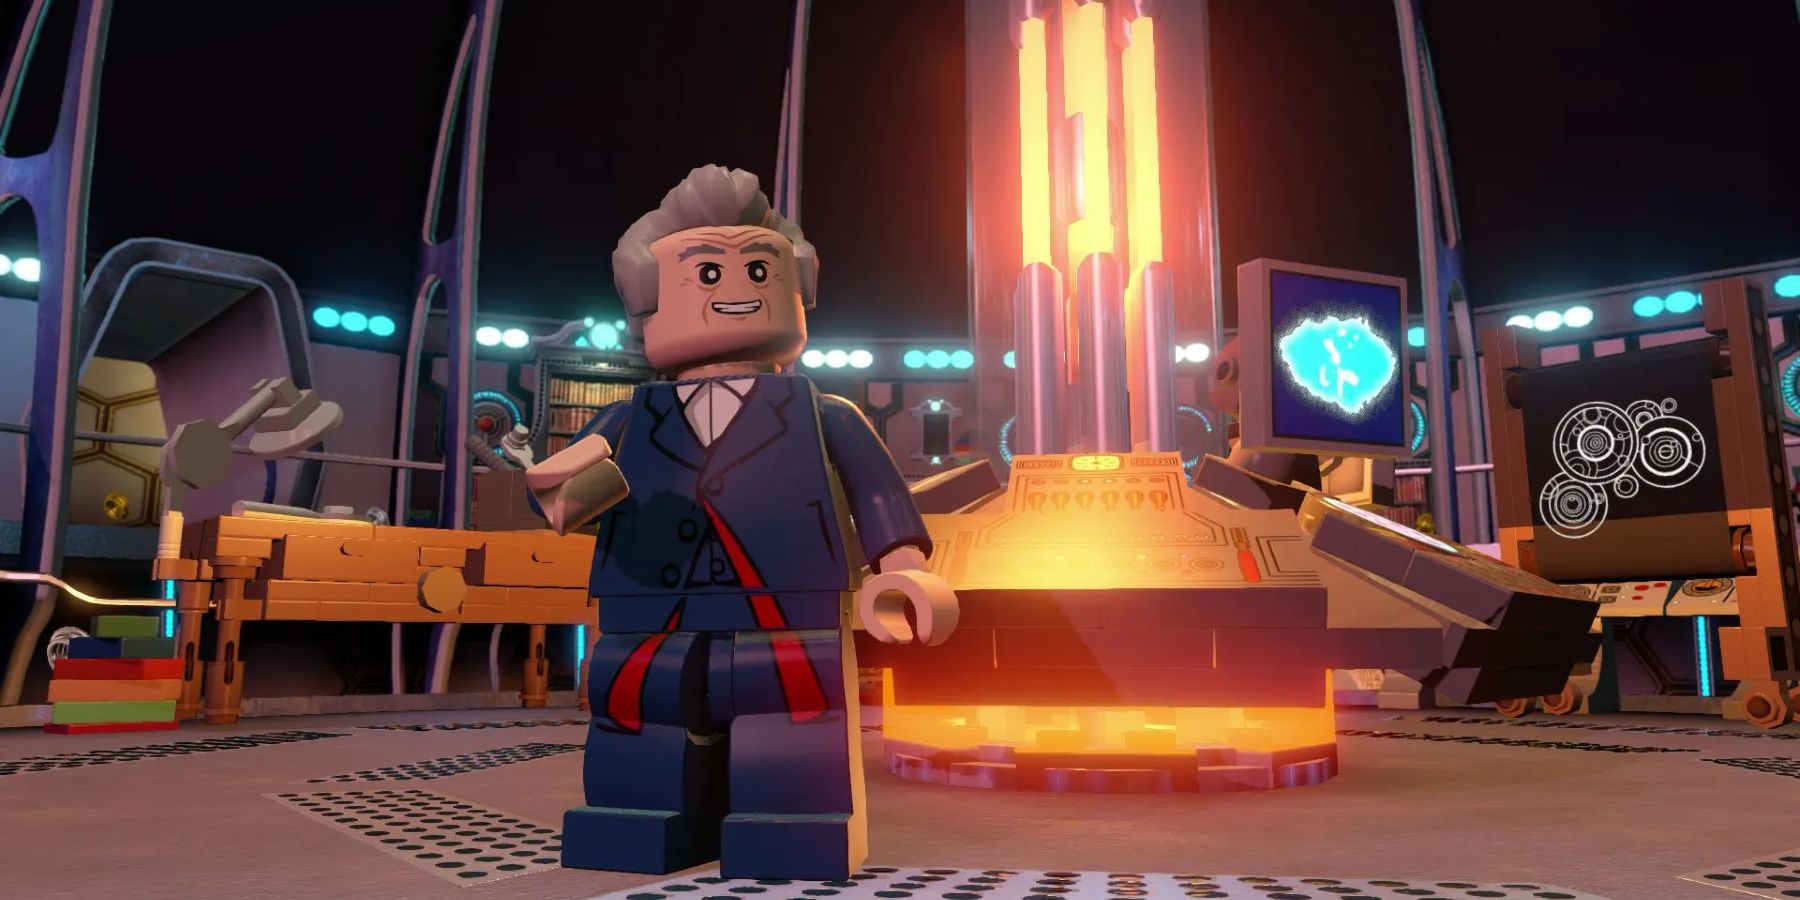 Dimensões do Lego de Doctor Who